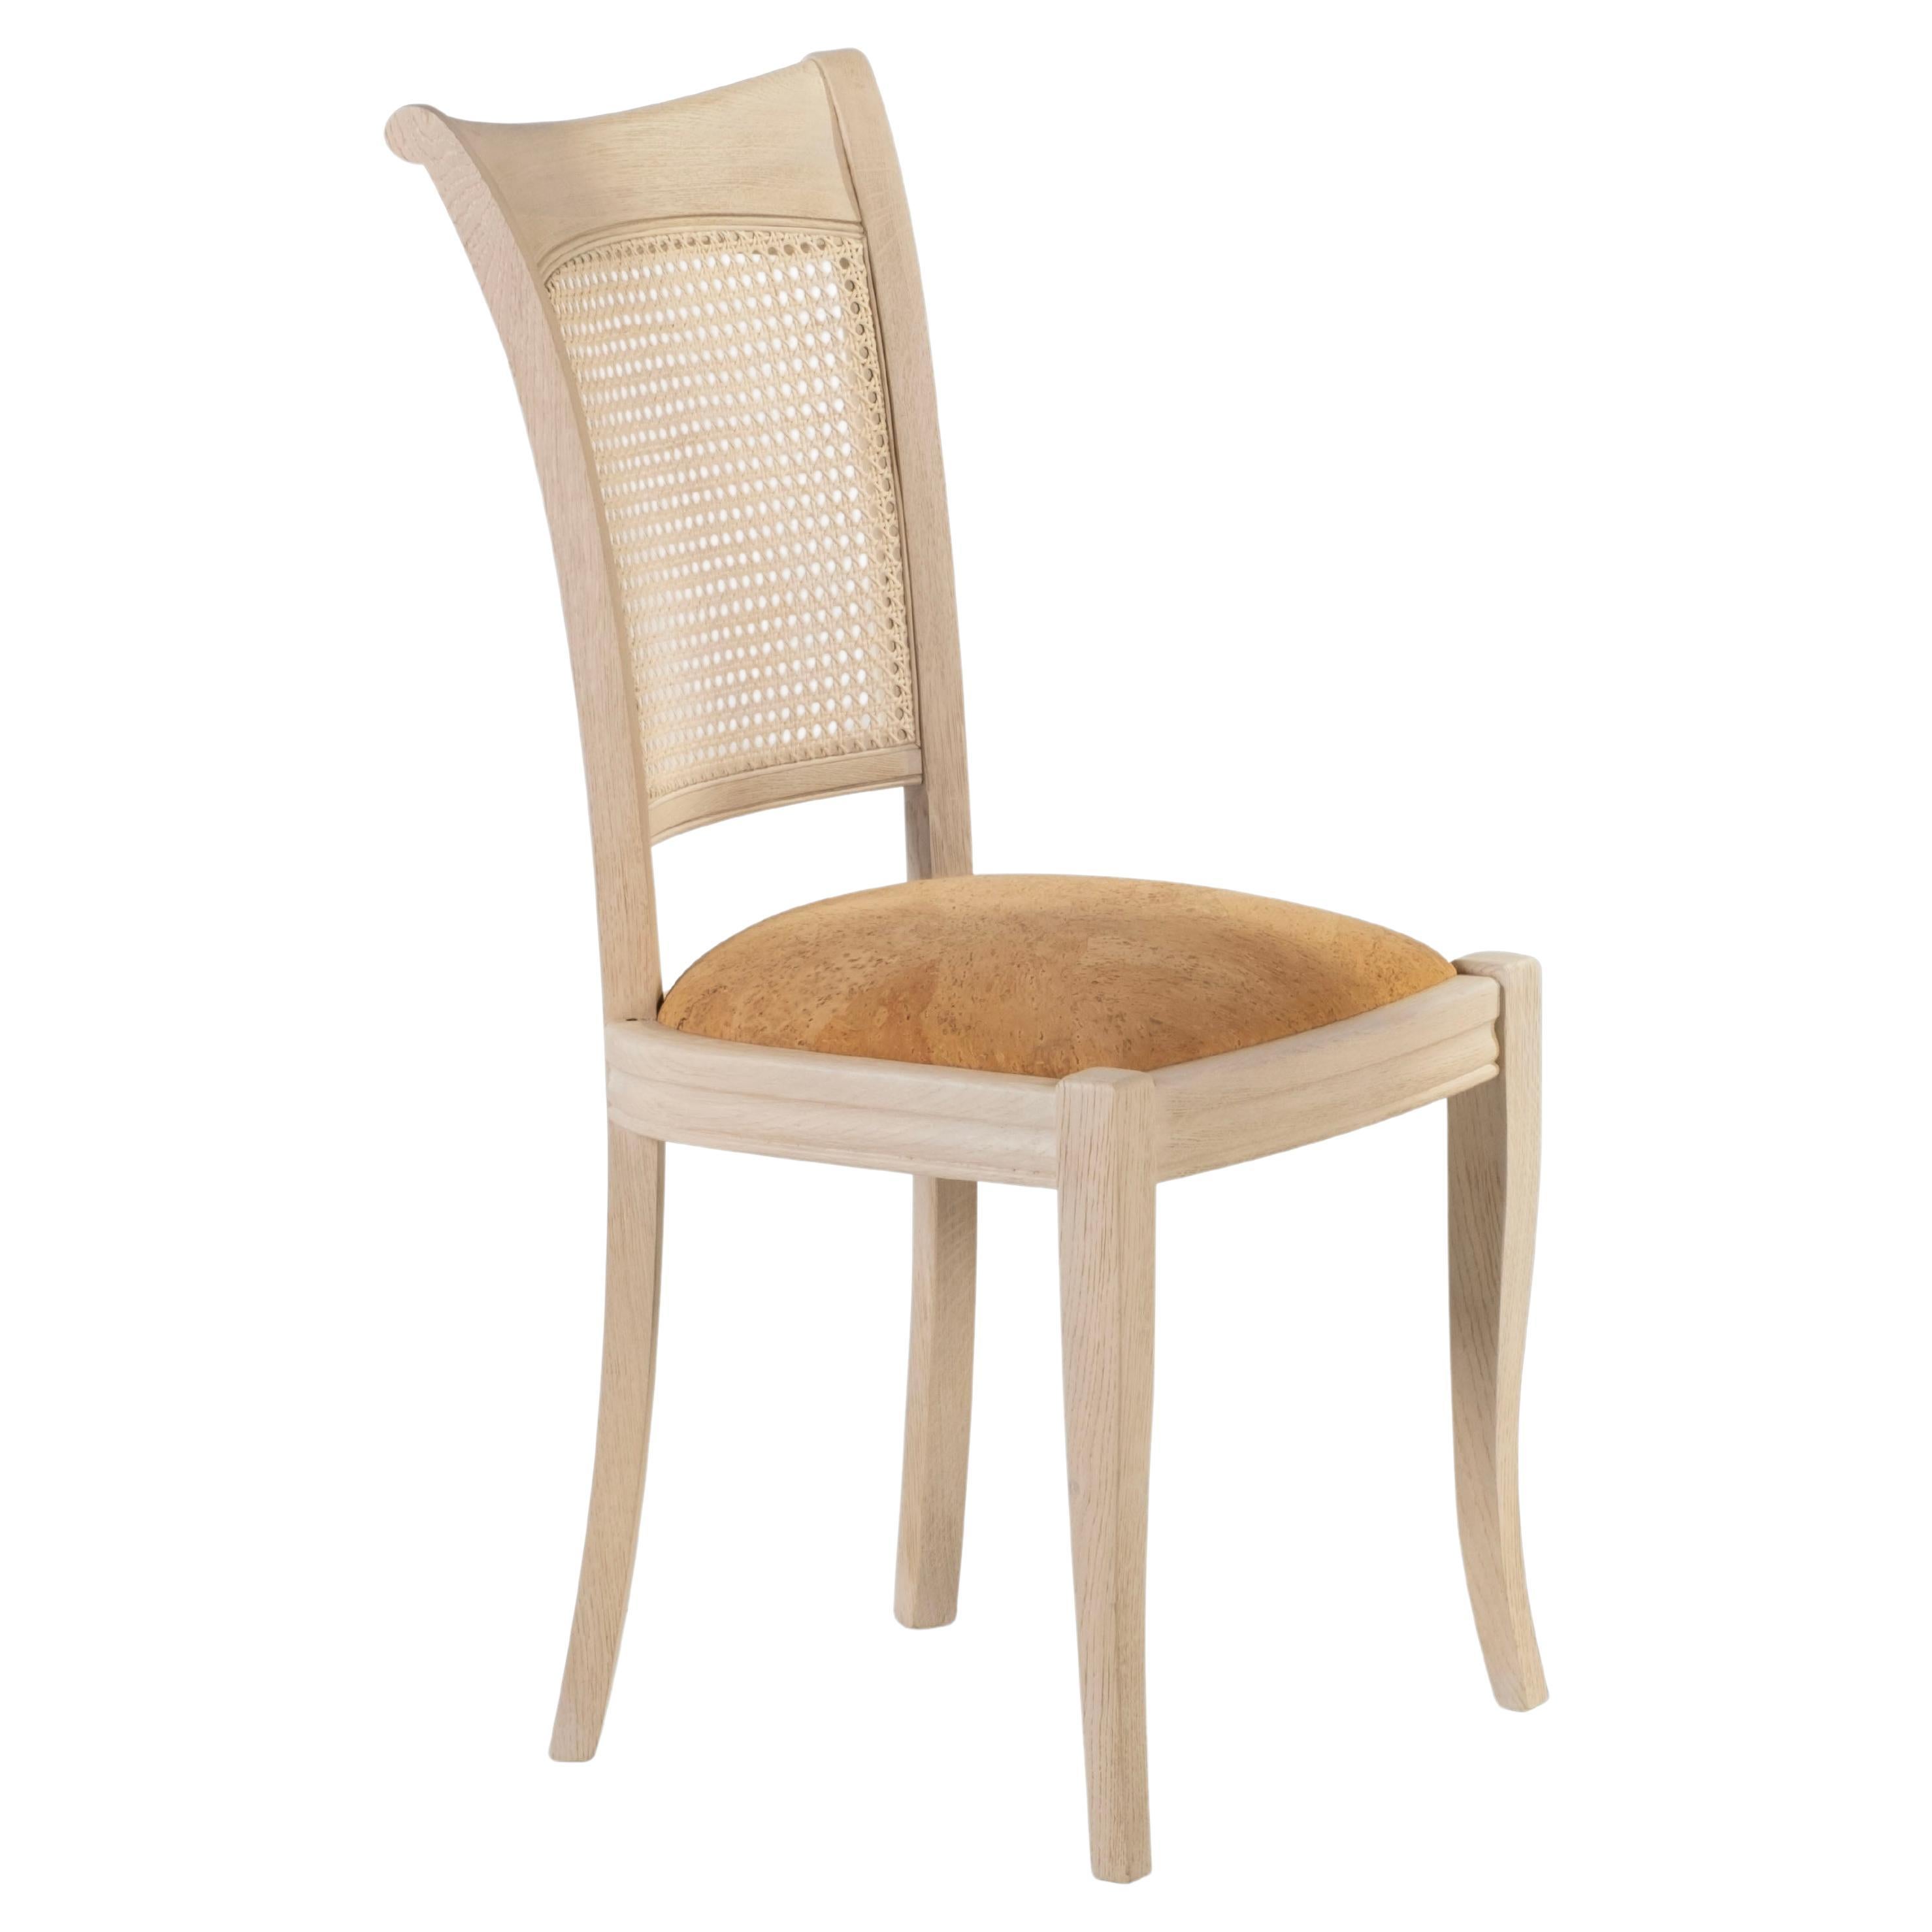 Ensemble de 6 chaises de salle à manger Sigmara, Collection Contemporary, fabriquées à la main au Portugal - Europe par Greenapple.

Chaise en bois de chêne américain recouverte d'un tissu en liège. Dossier en paille naturelle tressée à la